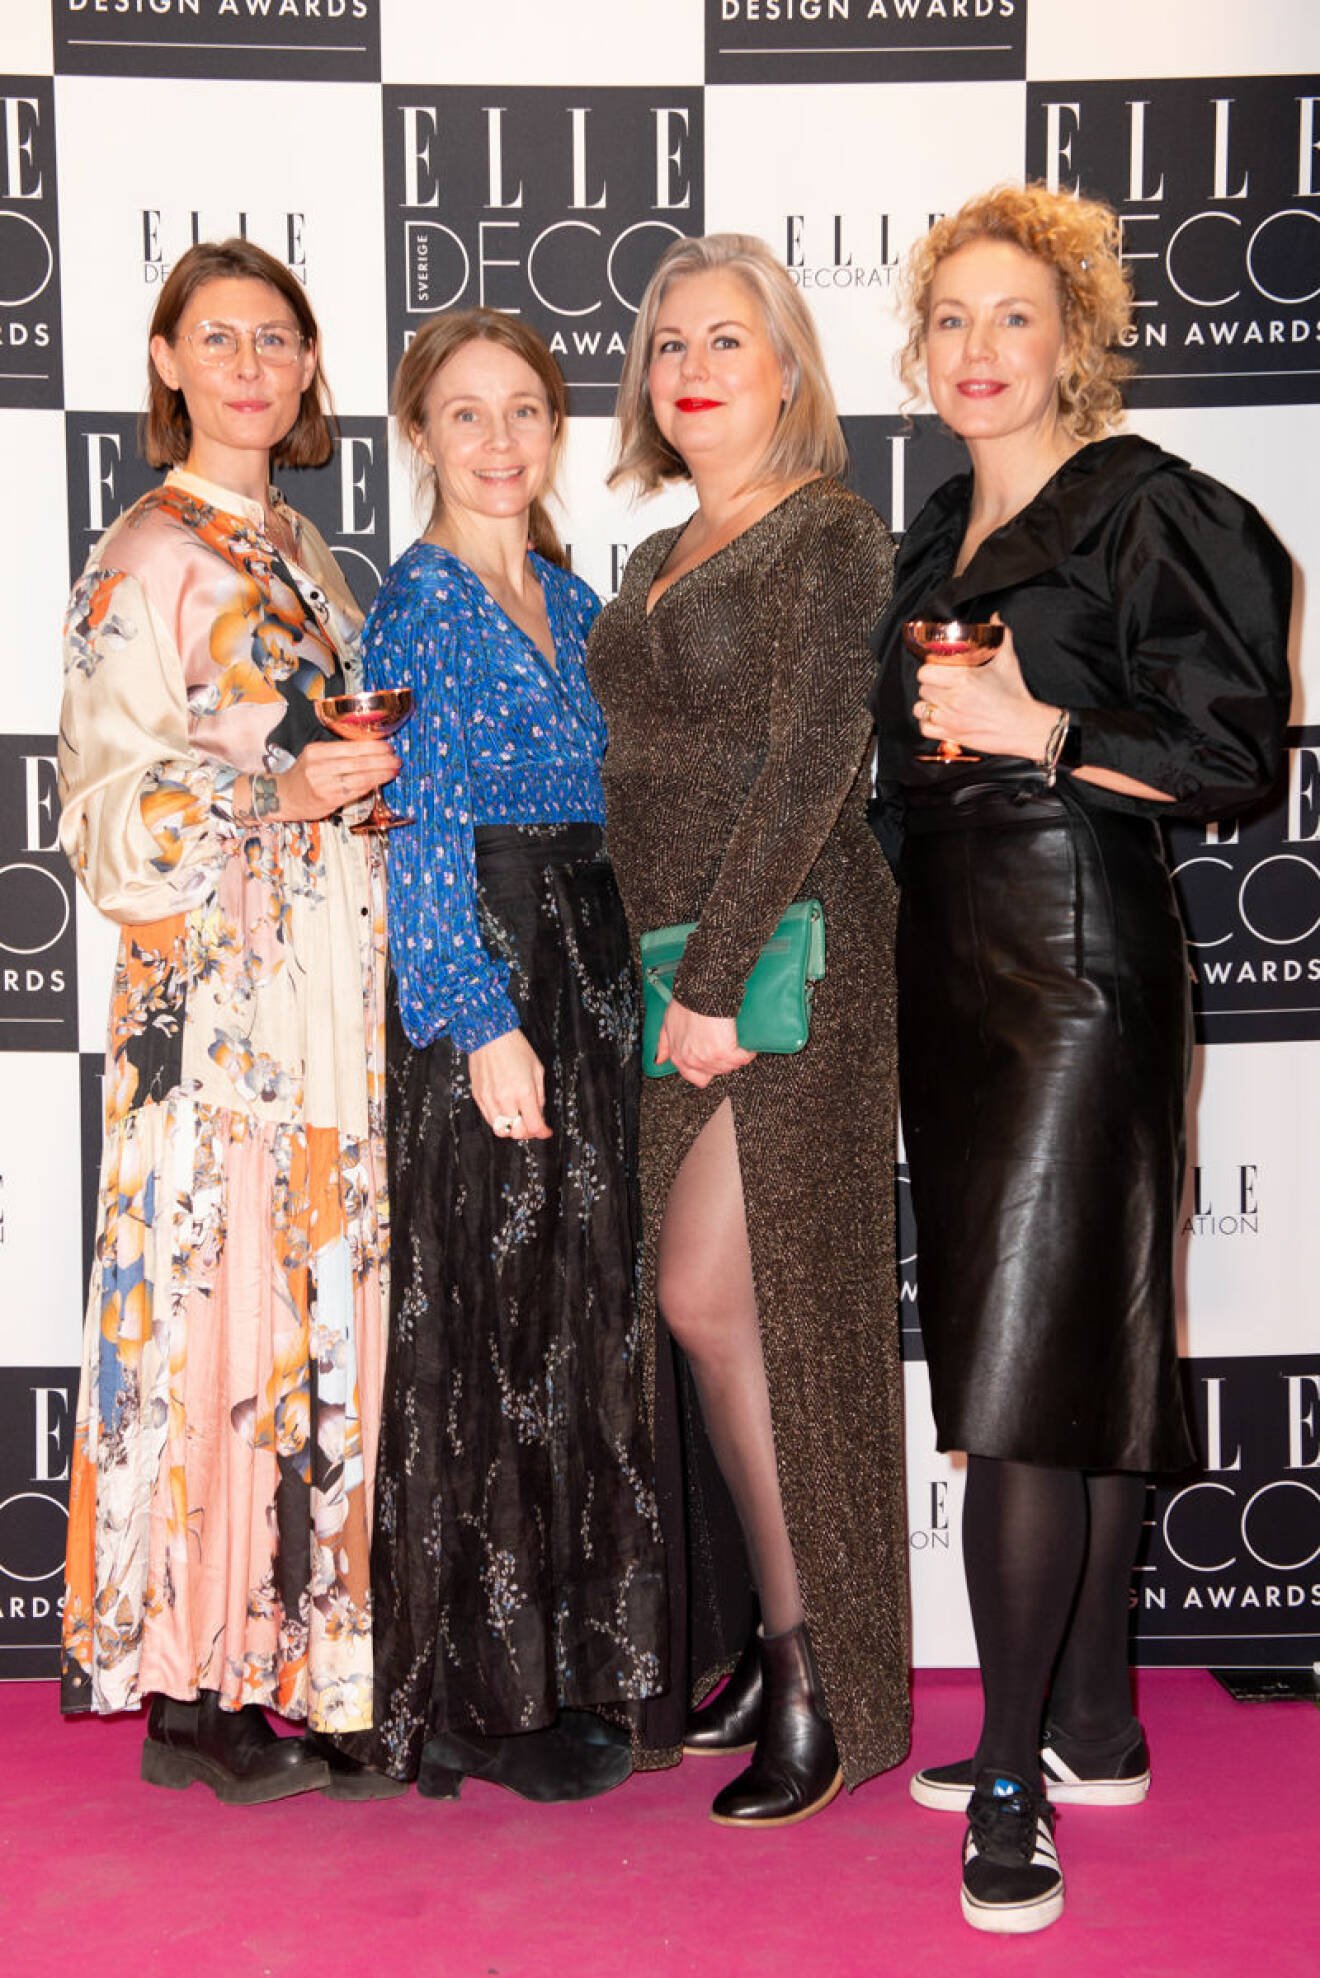 Kristin Lagerqvist, Sofia Vusir Jansson, Hanna Wendelbo och Daniella Witte på ELLE Deco Design Awards 2020